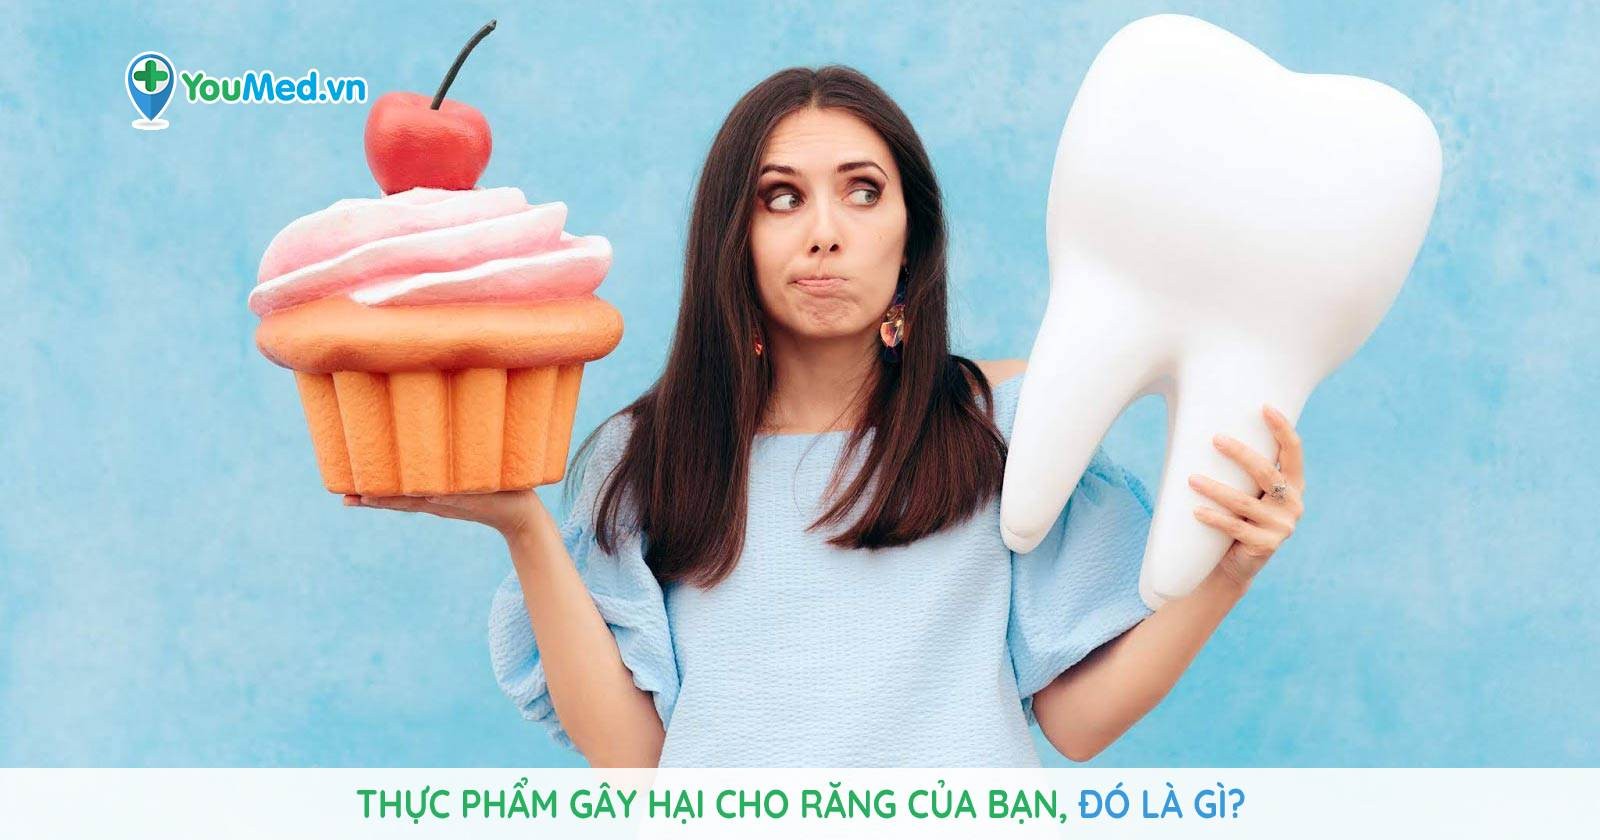 Thực phẩm gây hại cho răng của bạn, đó là gì